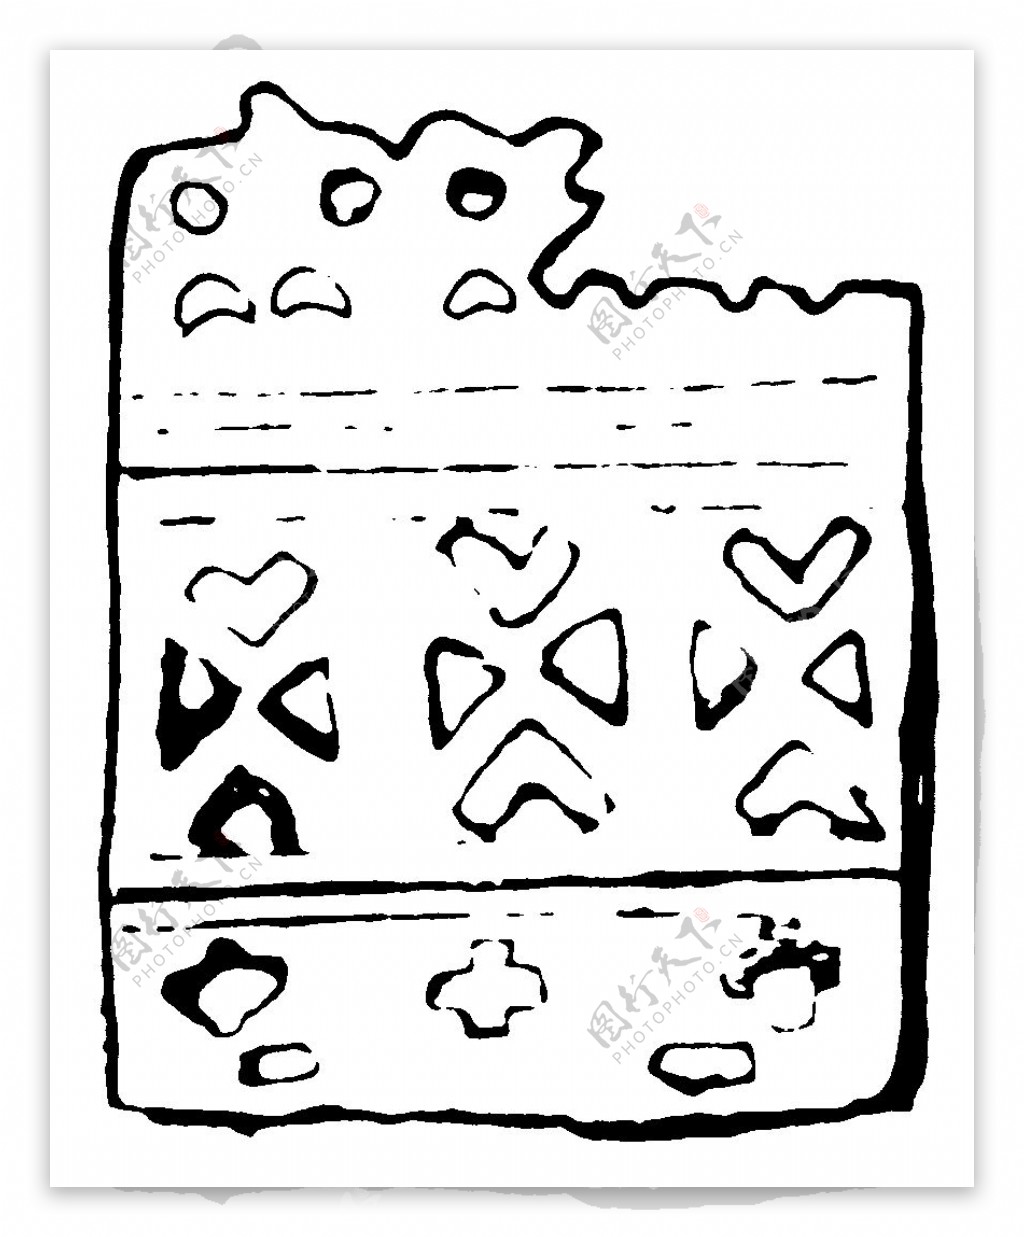 器物图案两宋时代图案中国传统图案339